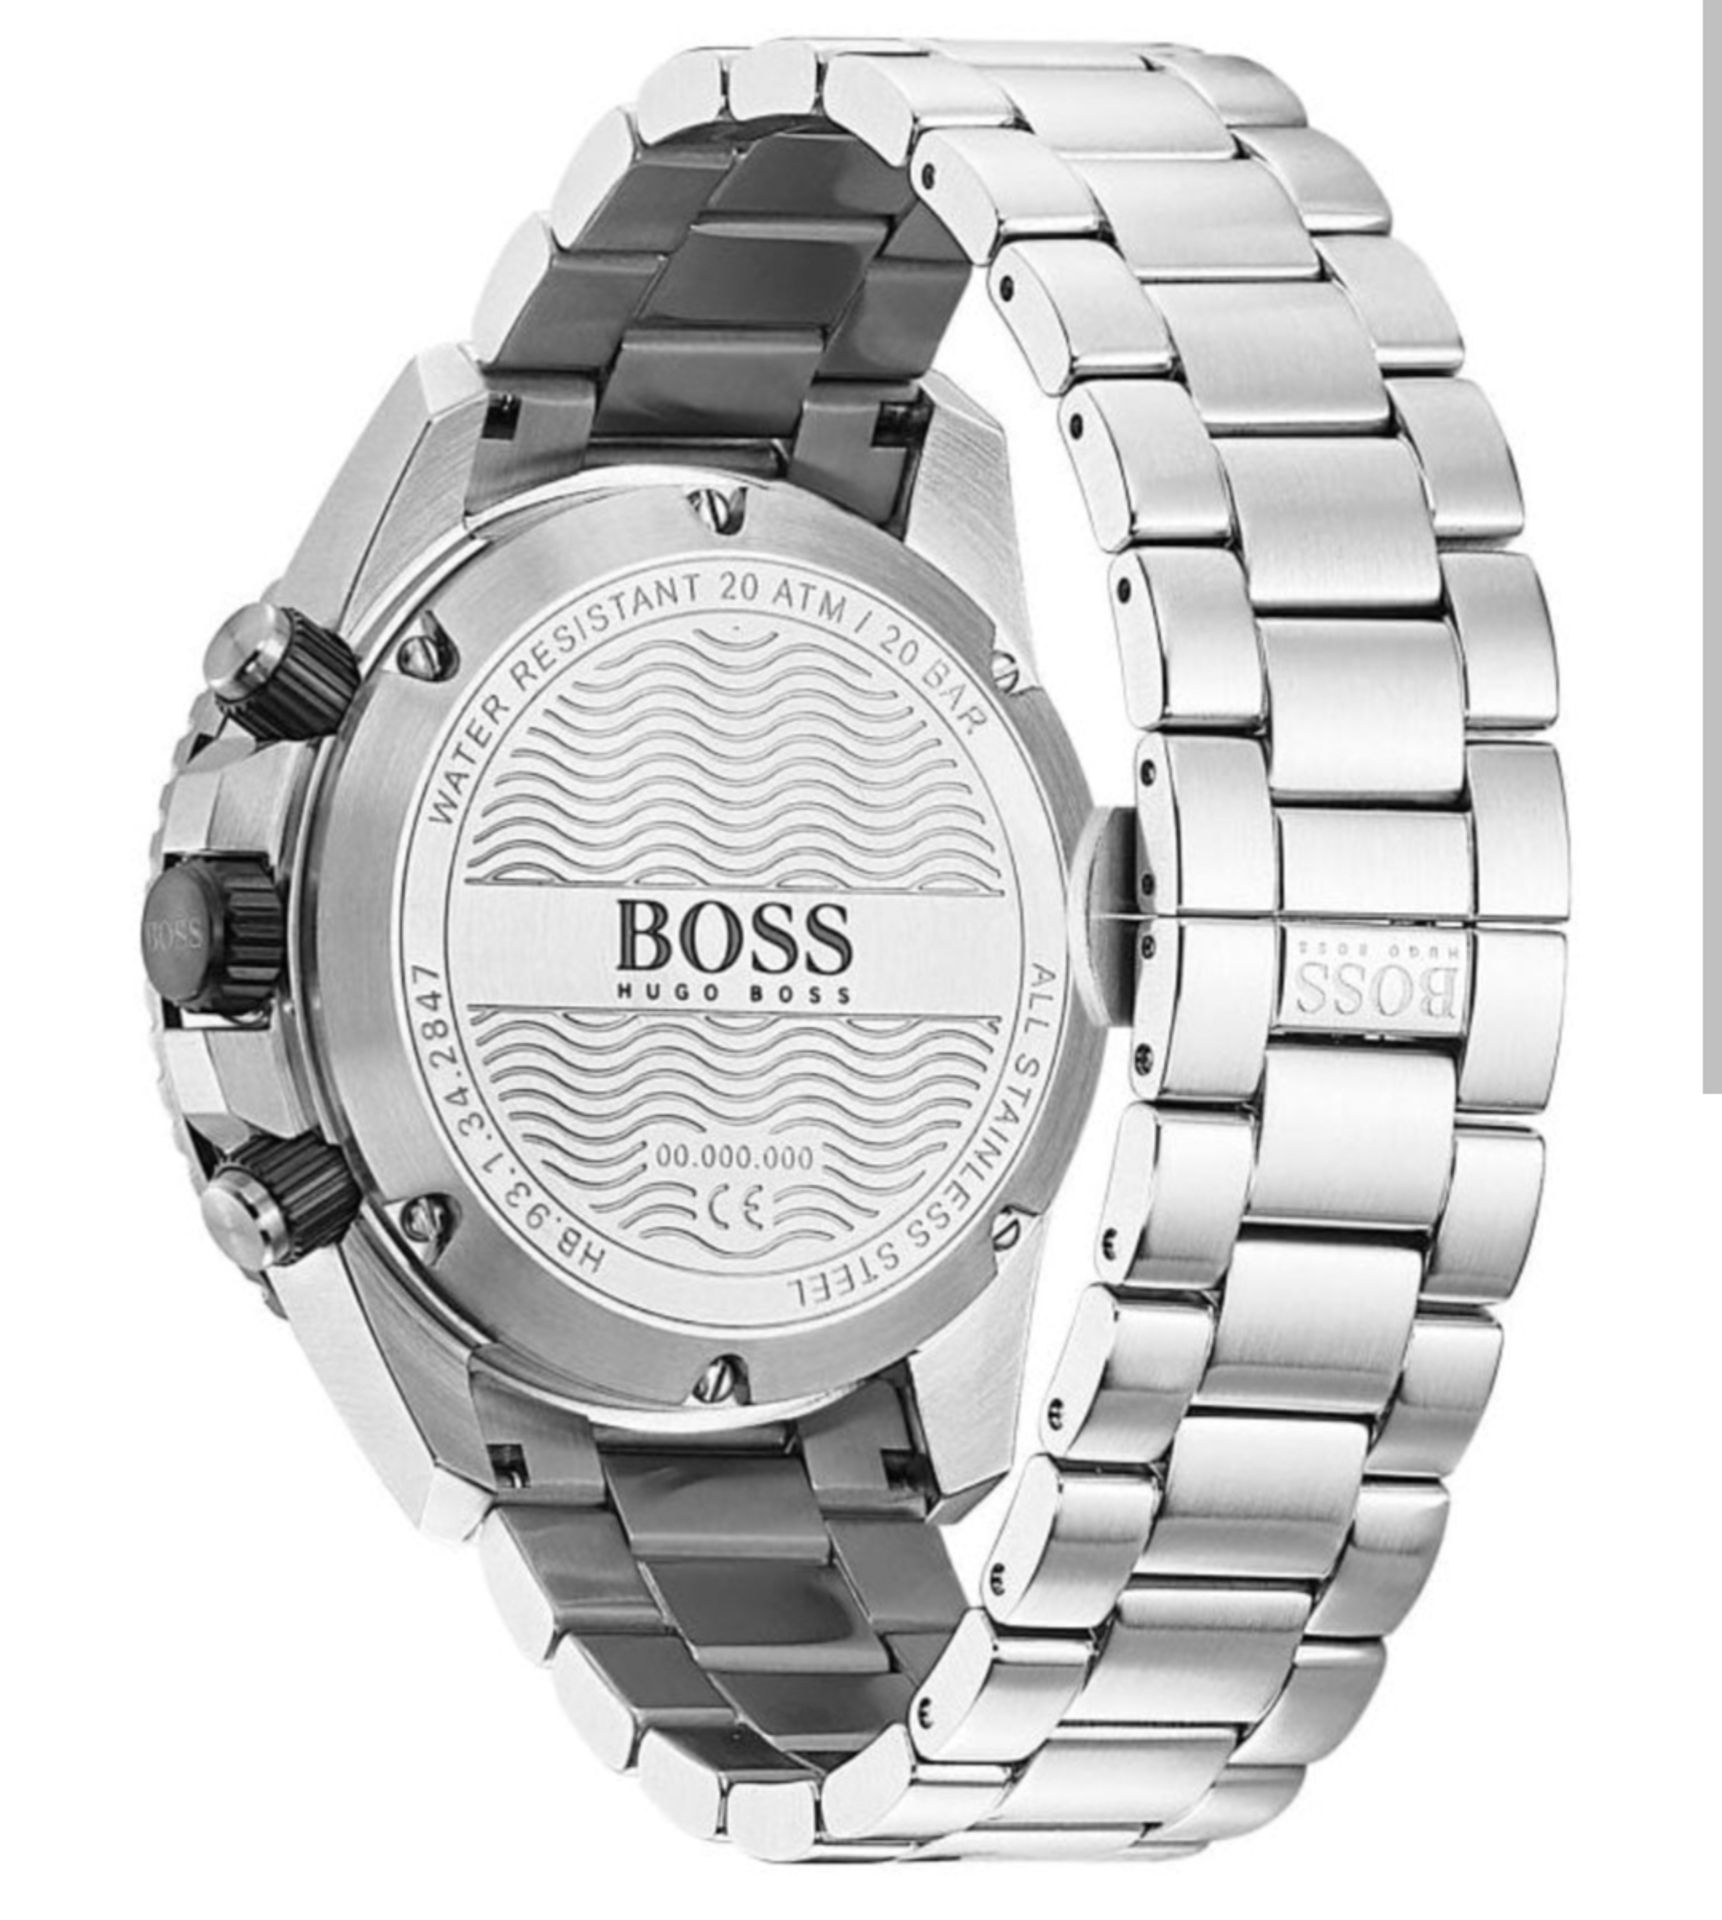 Hugo Boss 1513775 Men's Vela Silver Stainless Steel Bracelet Quartz Chronograph Watch - Image 5 of 10